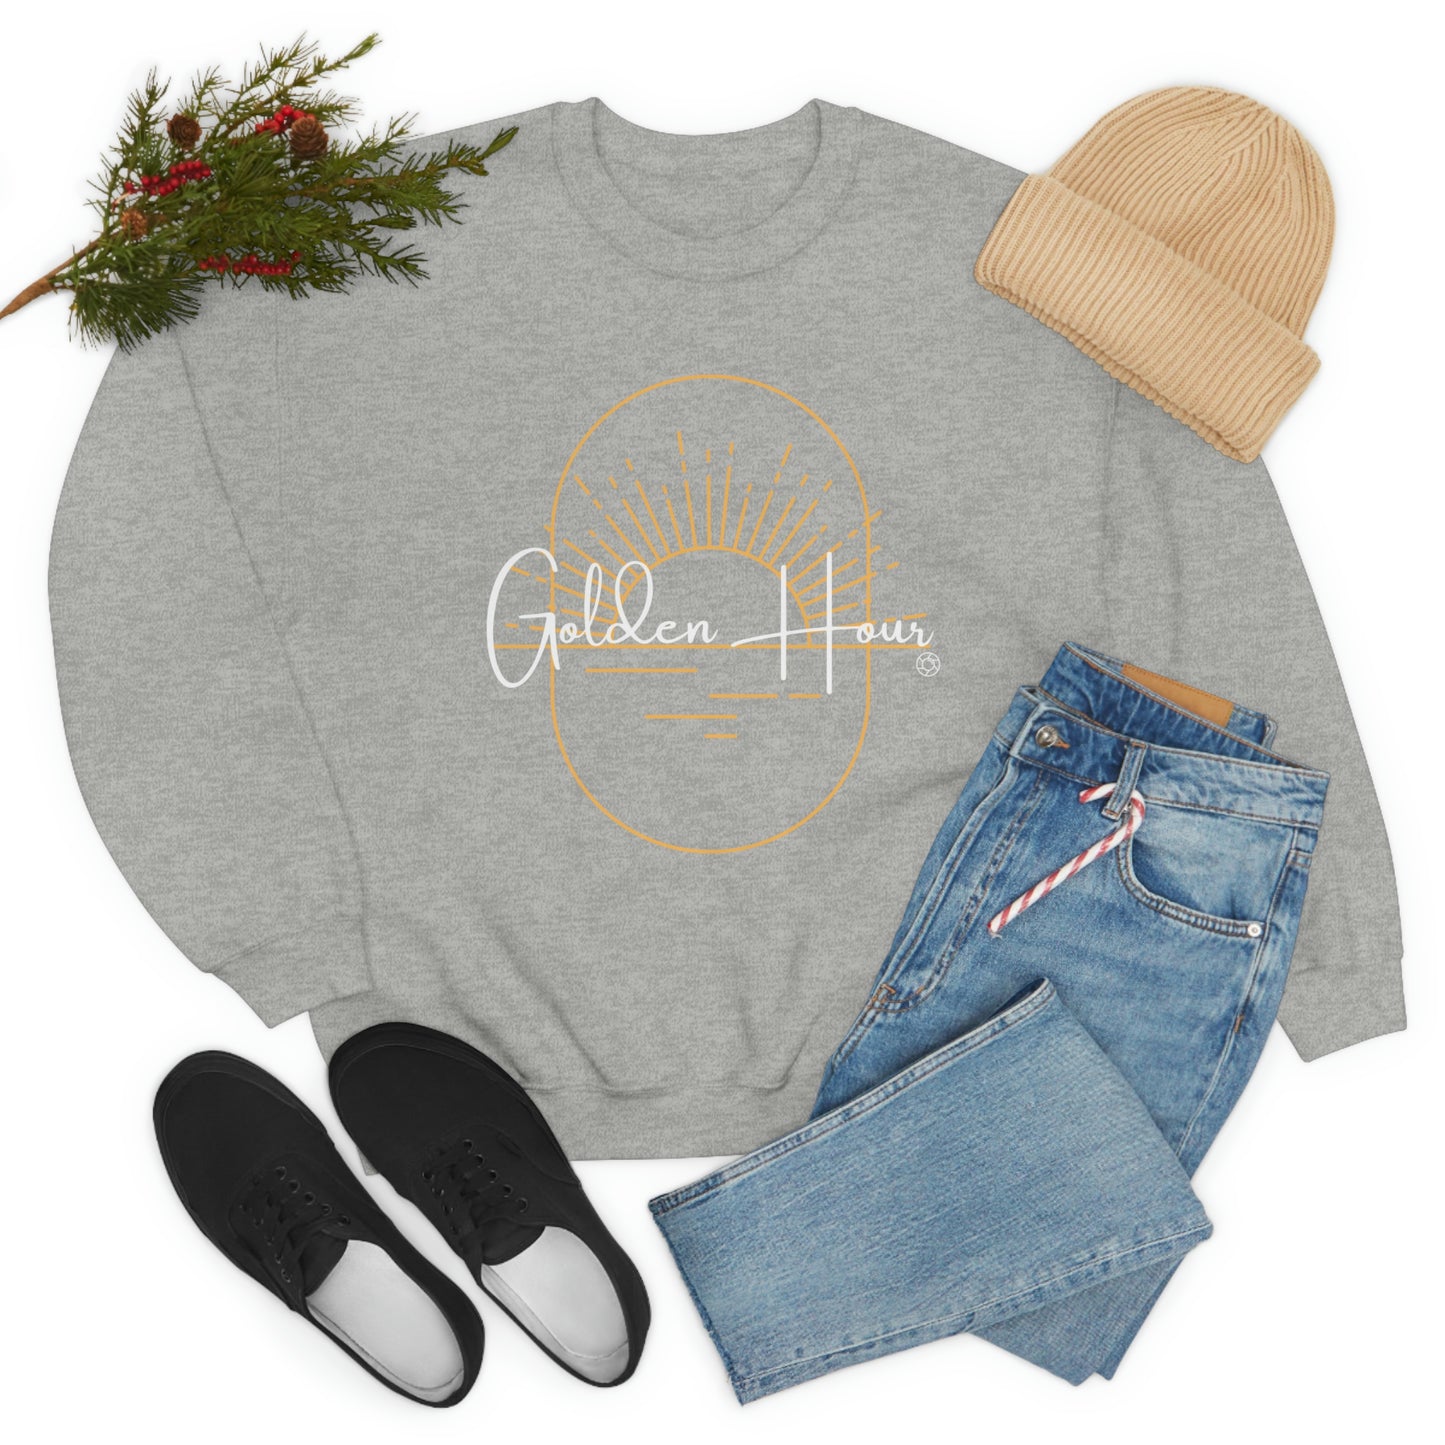 Golden Hour - Heavy Blend™ Crewneck Sweatshirt